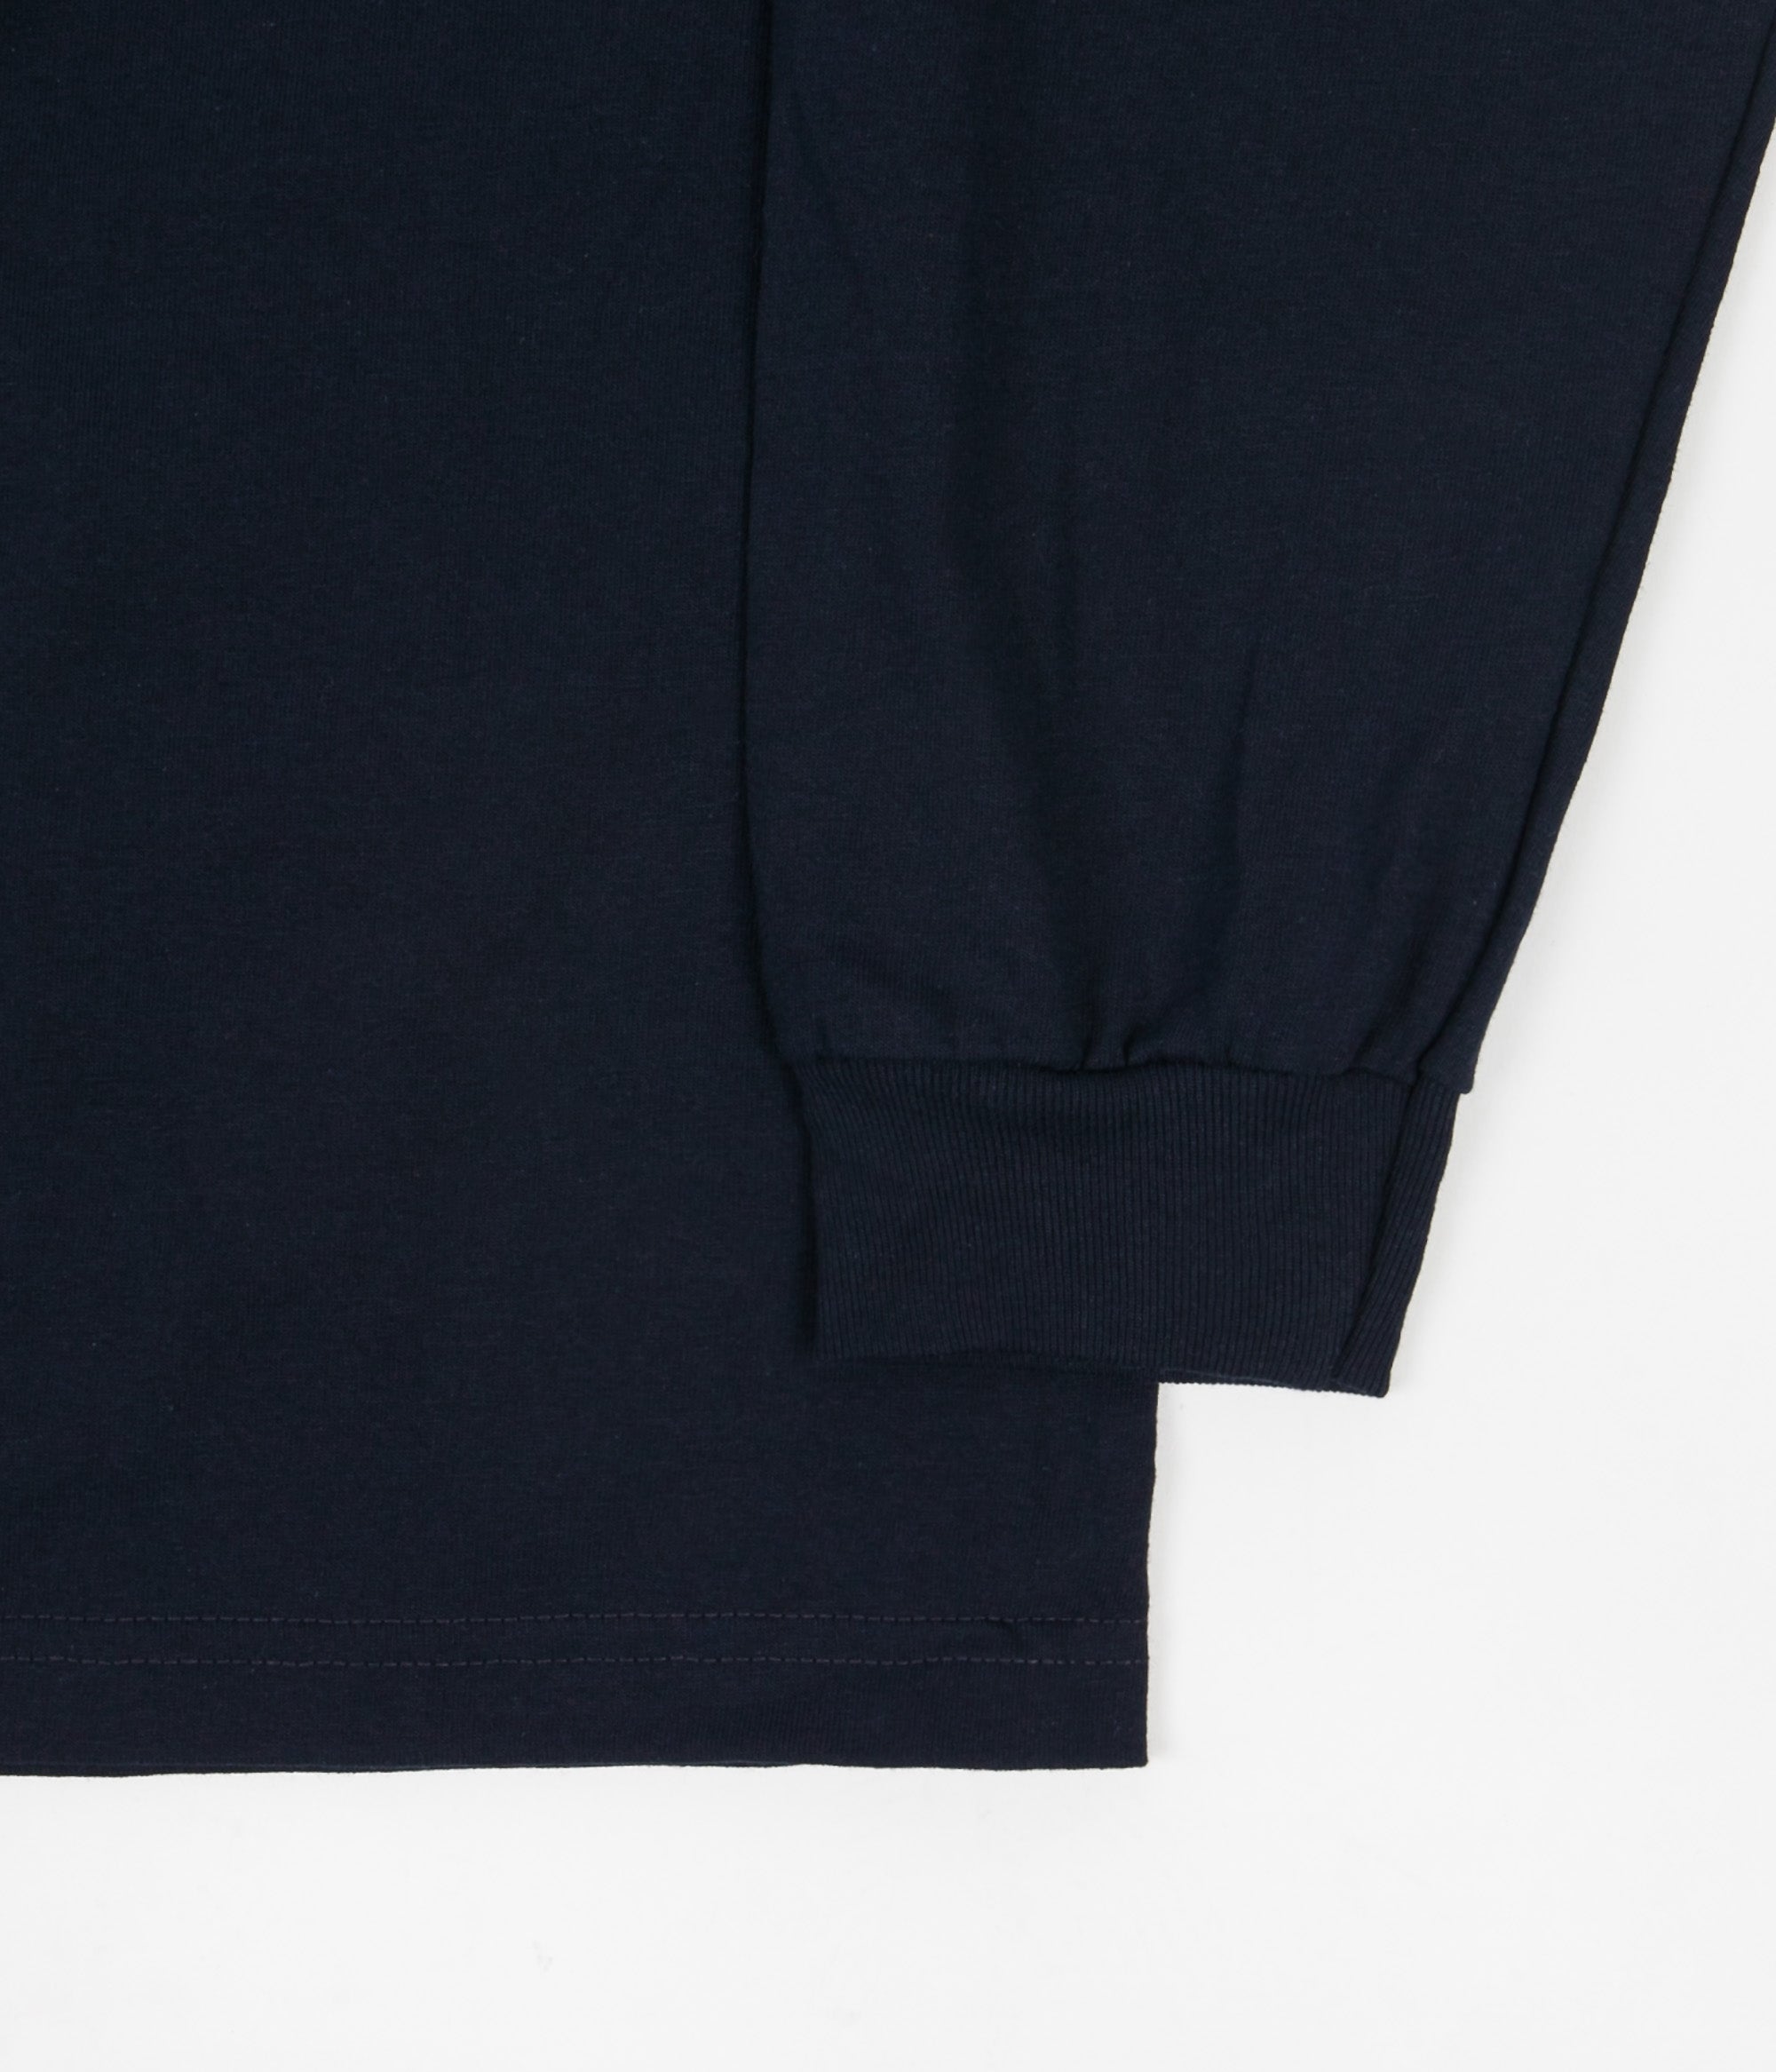 Pass Port Intersolid Long Sleeve T-Shirt - Navy | Flatspot